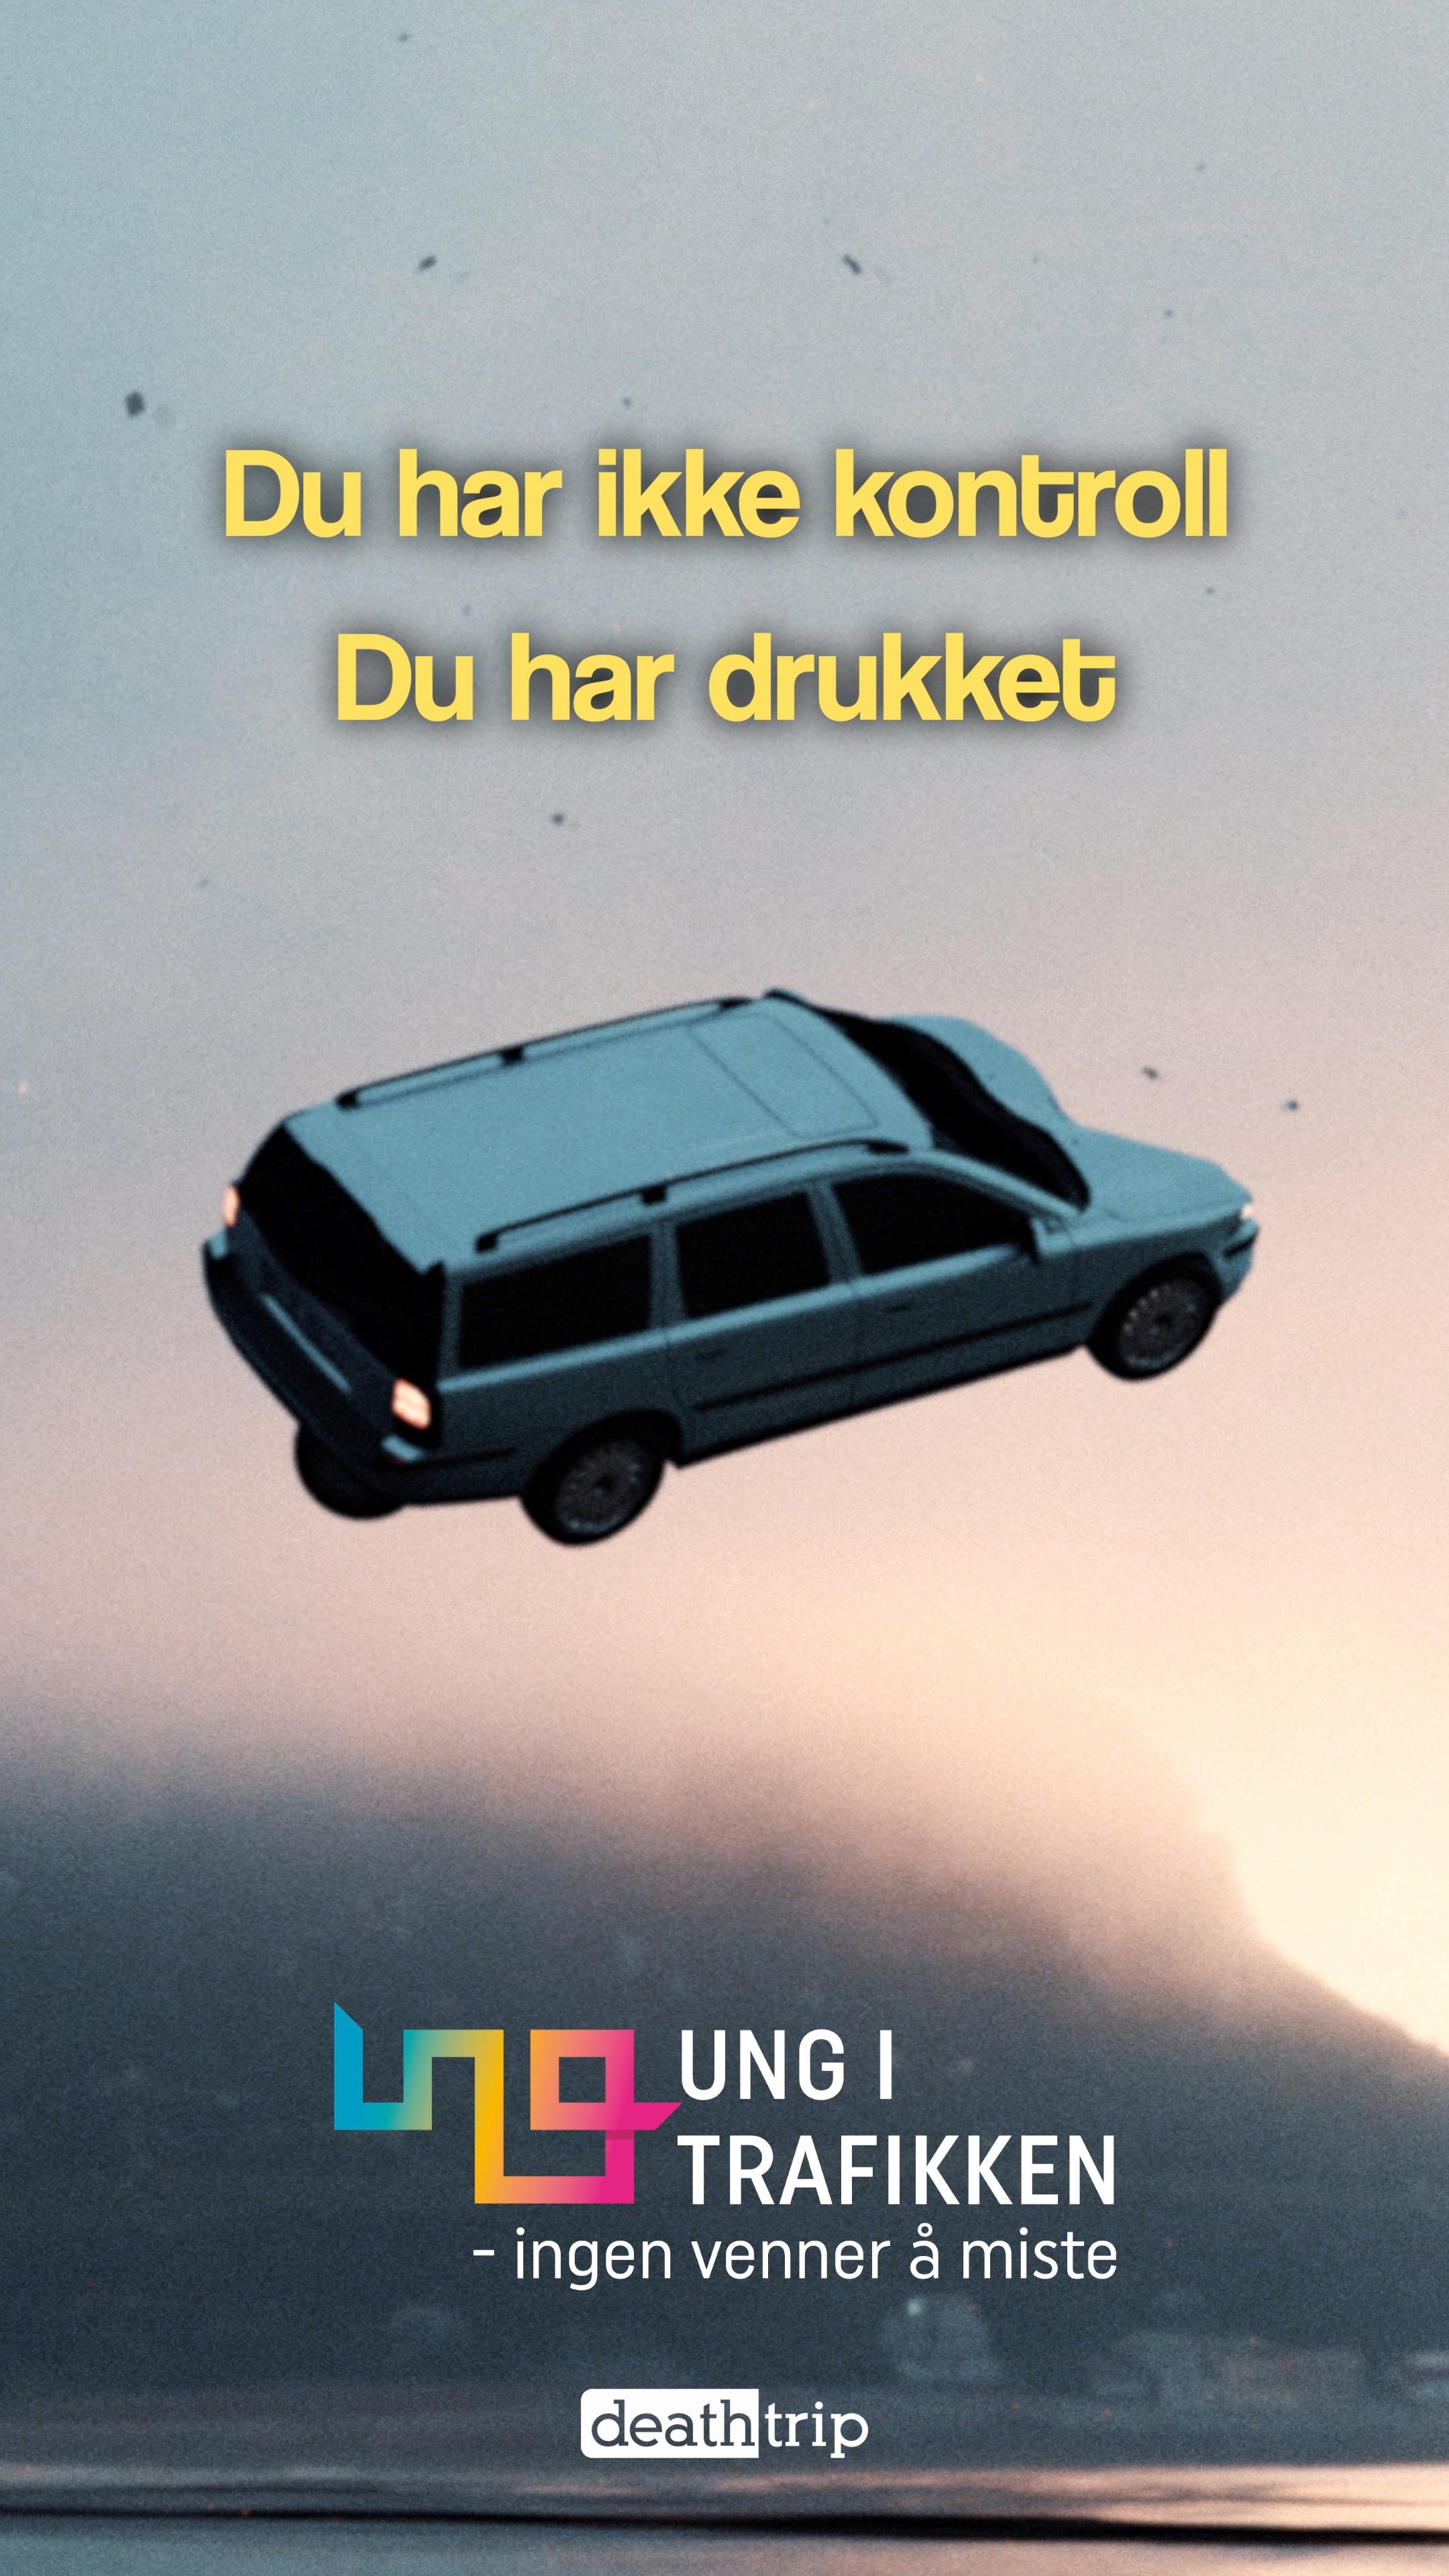 Plakat: Bil i lufta med teksten: Du har ikke kontroll, du har drukket.